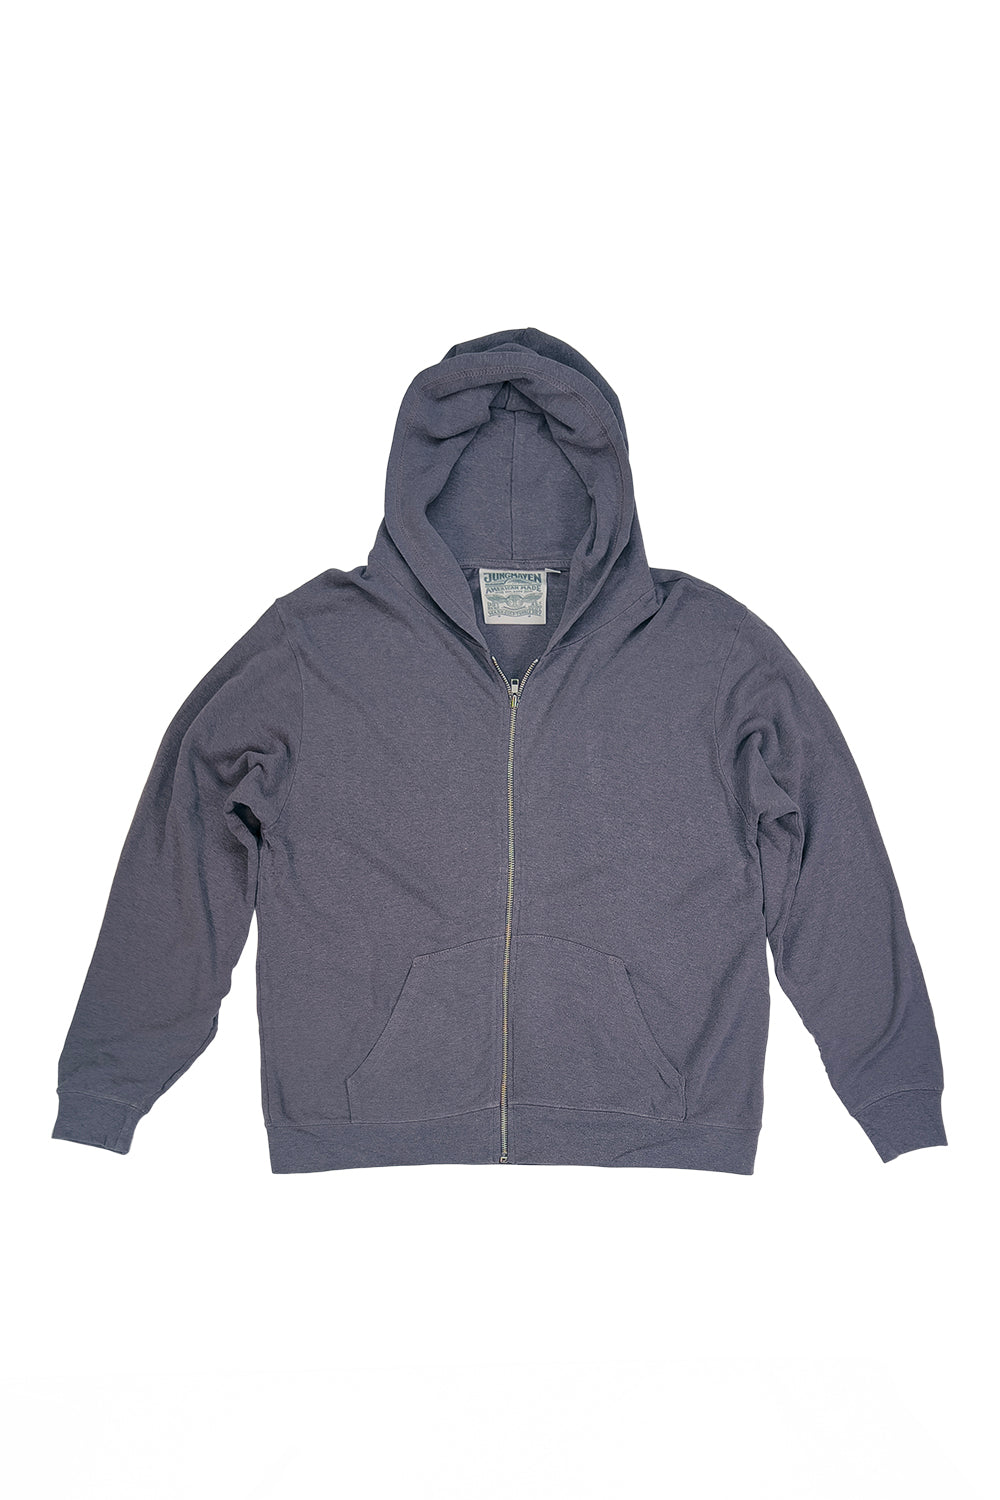 Newport Sweatshirt | Jungmaven Hemp Clothing & Accessories / Color: Diesel Gray